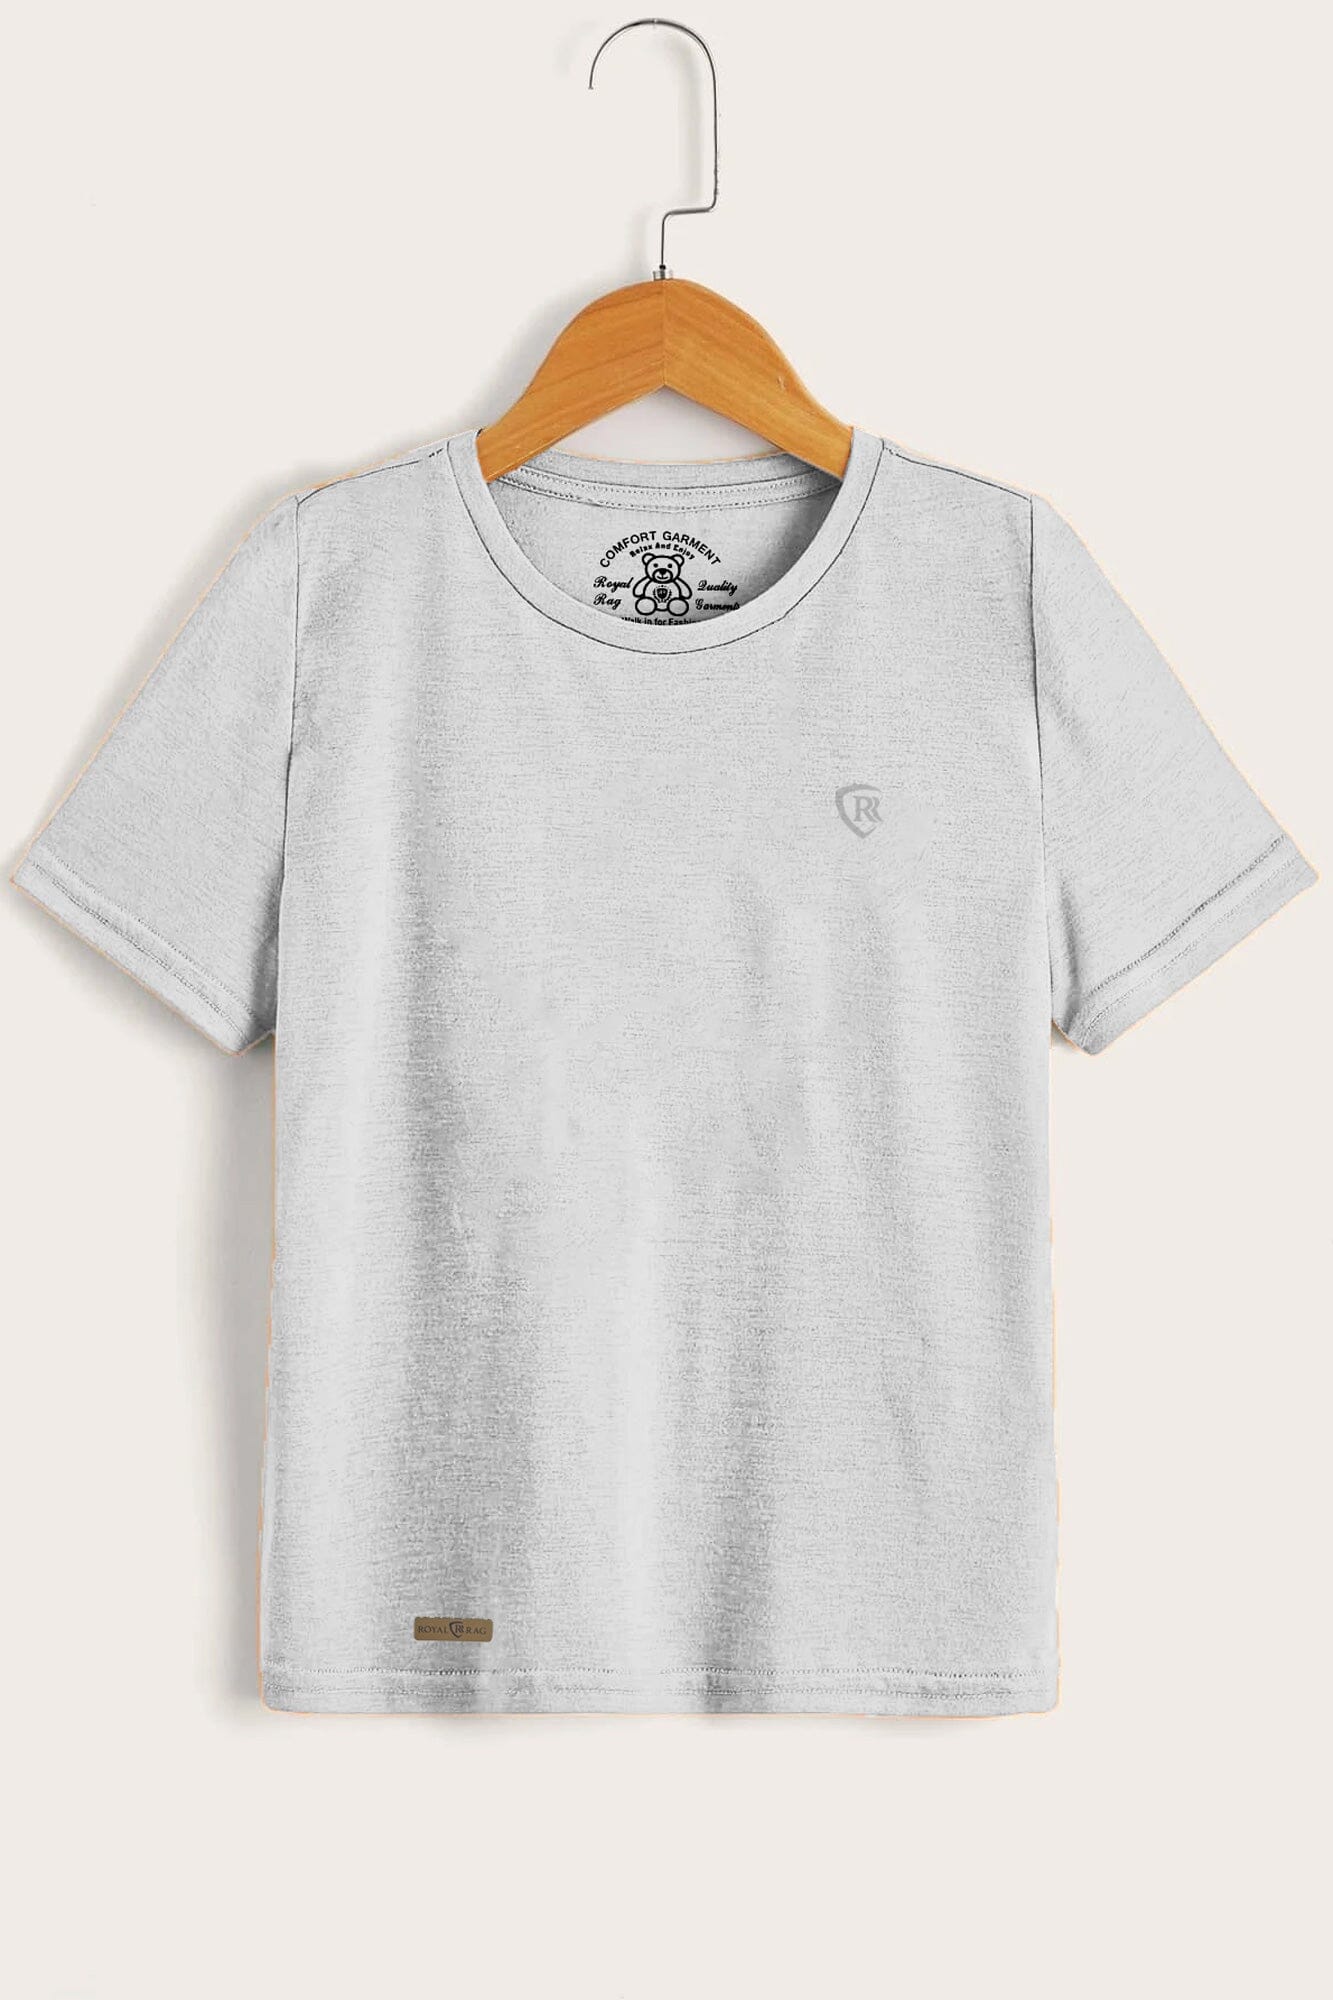 RR Kid's Logo Printed Short Sleeve Tee Shirt Boy's Tee Shirt Usman Traders Heather Grey 2-3 Years 